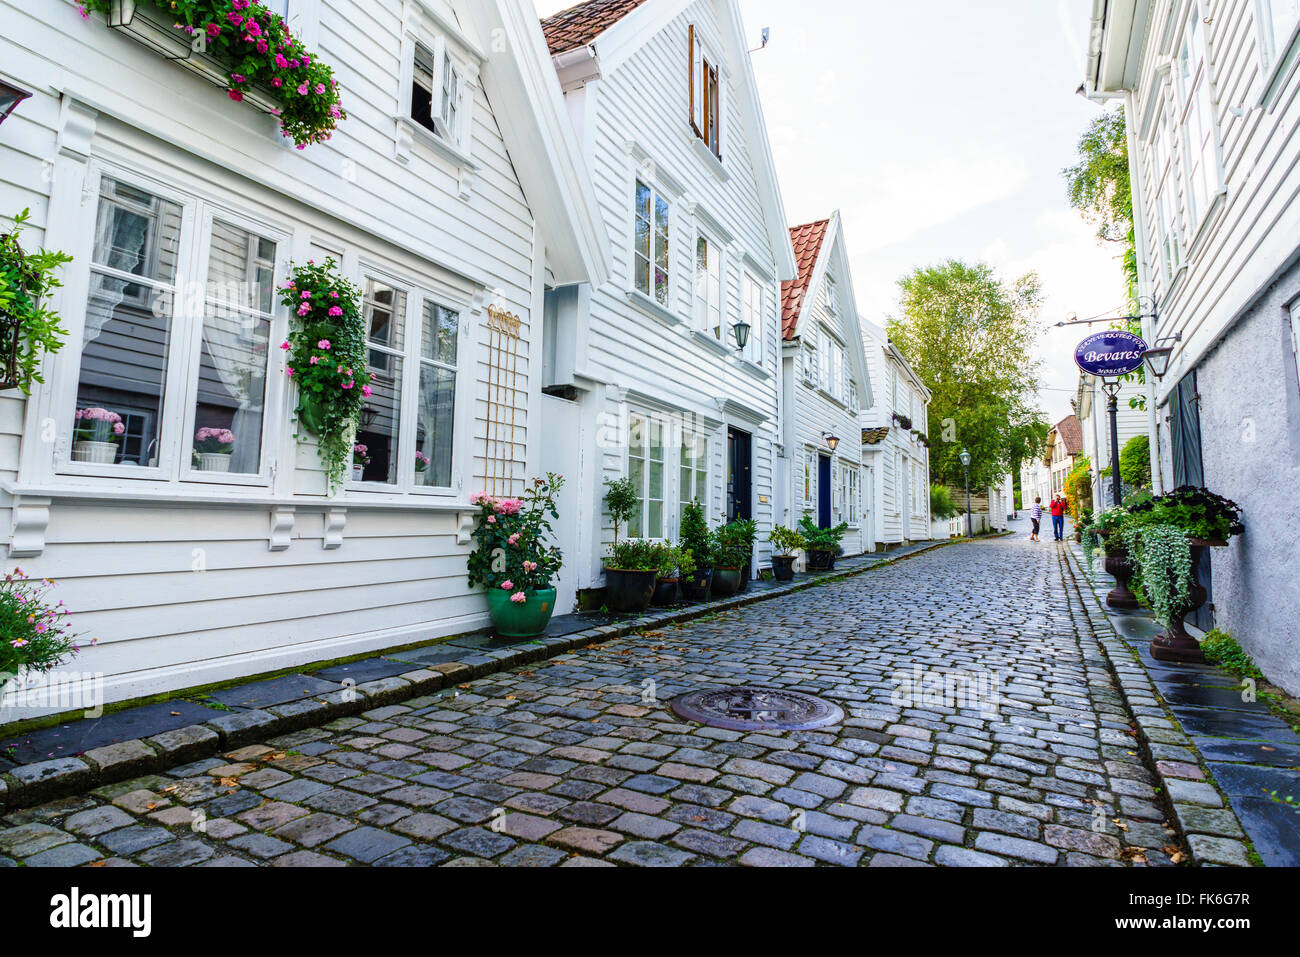 Rizière, composée d'environ 250 bâtiments datant du début du 18e siècle, Stavanger, Norvège, Rotaland Banque D'Images